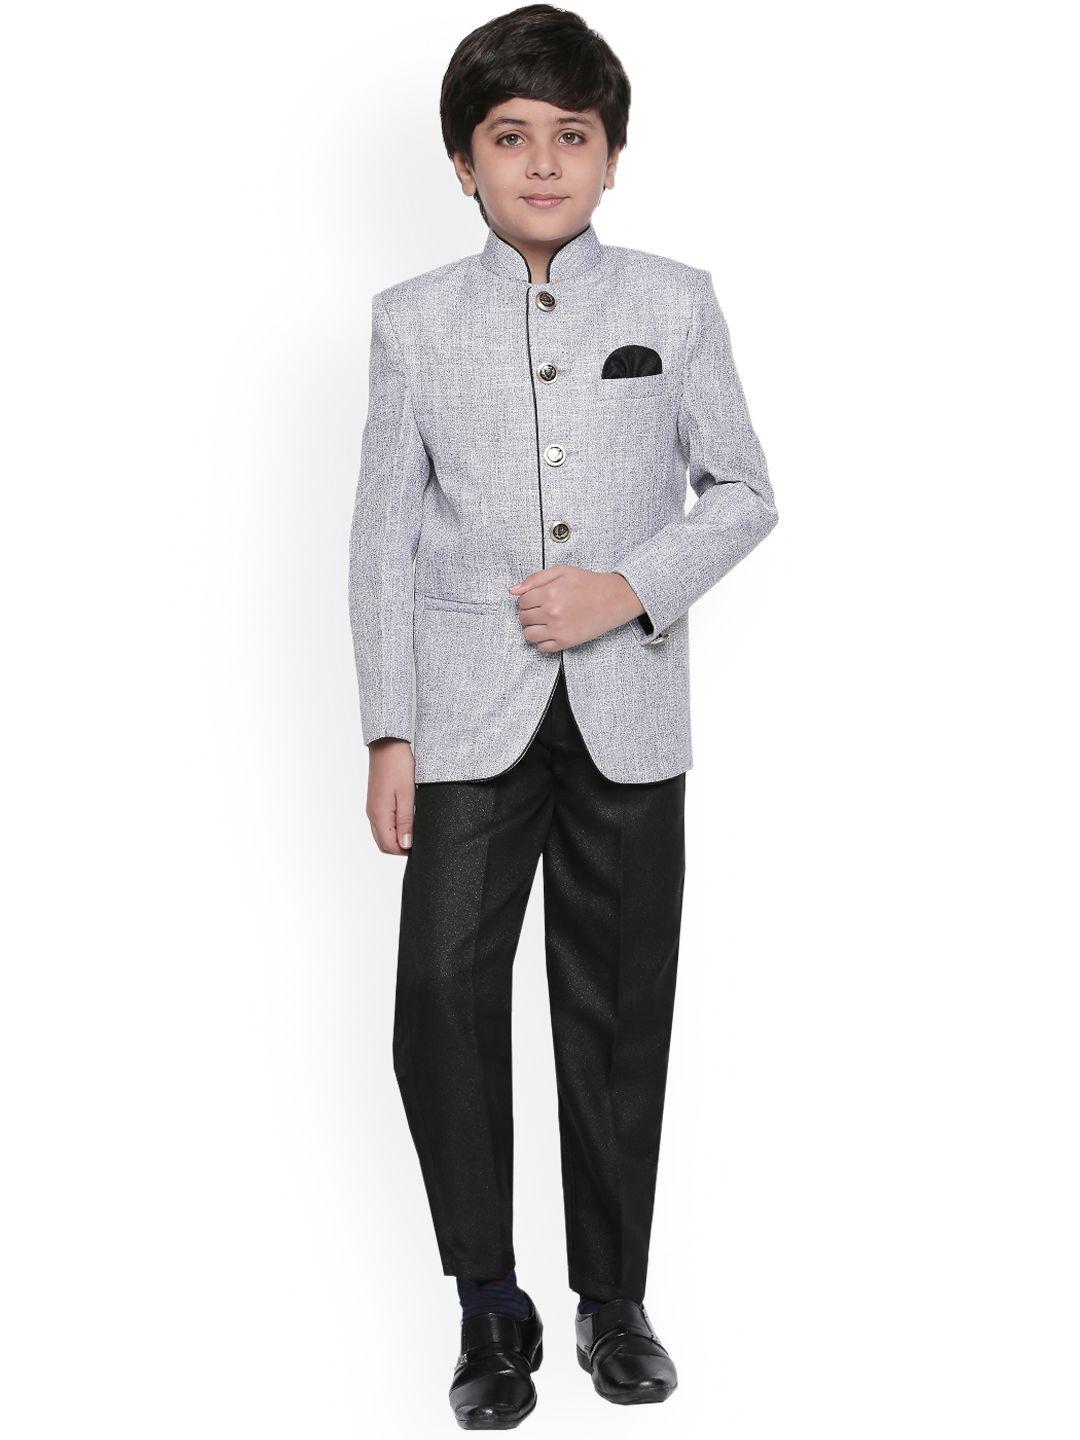 jeetethnics grey boys solid ethnic suit